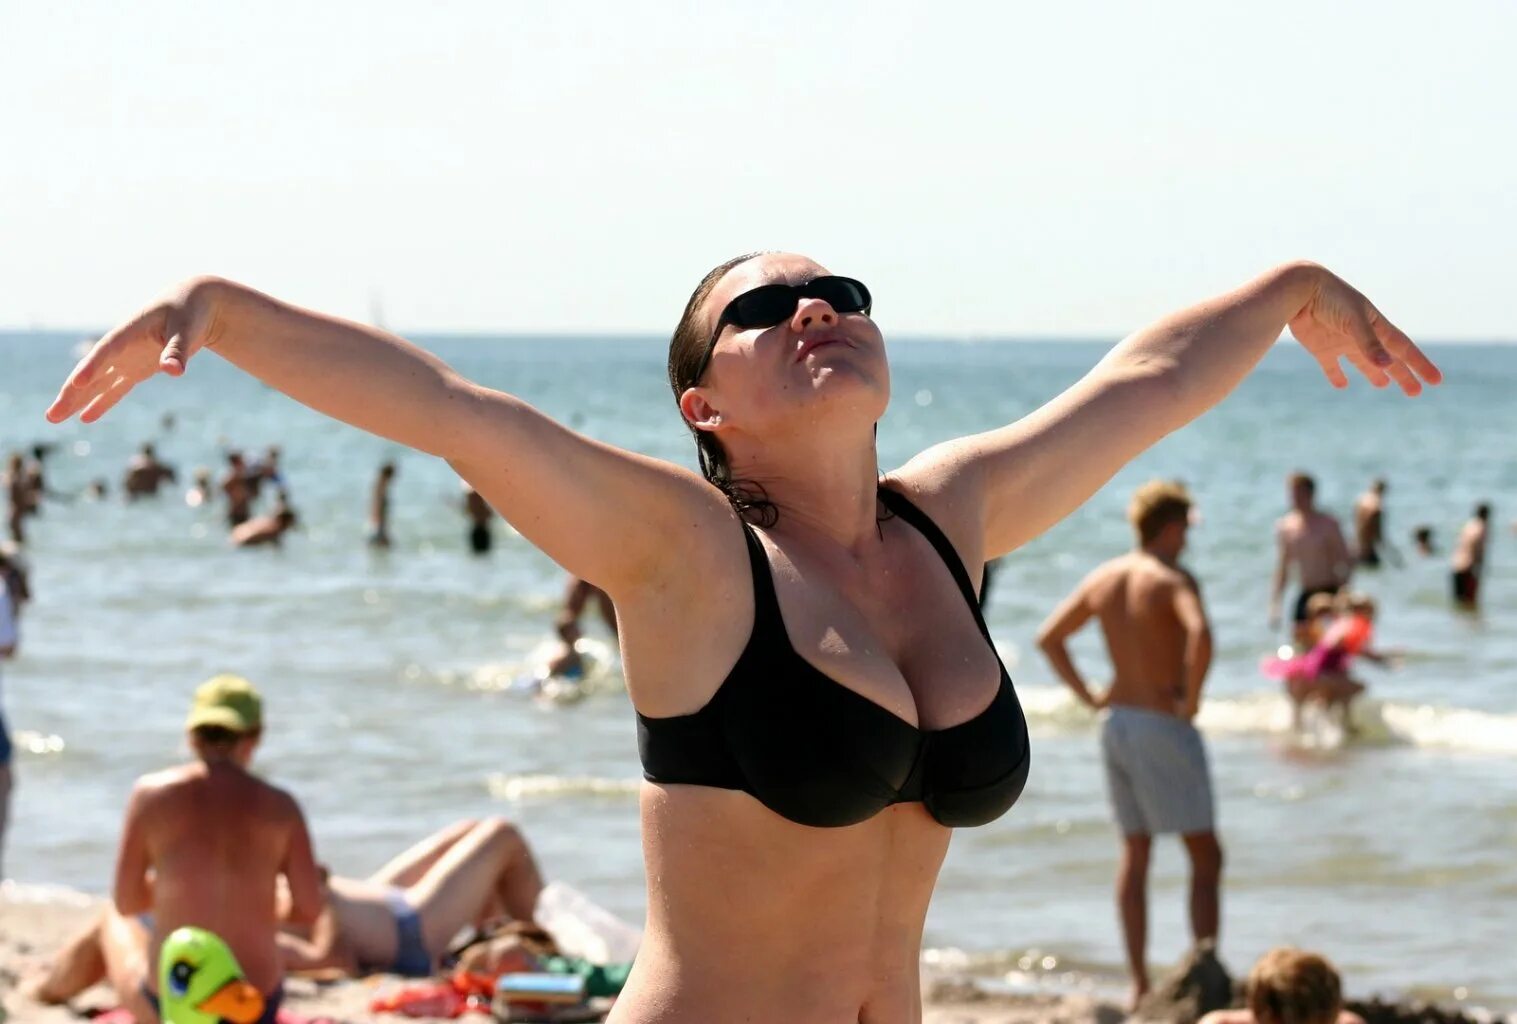 Женщины на пляже. Российские туристы на пляже. Отдыхающие на пляже. Женщины на российских пляжах. Тетка море